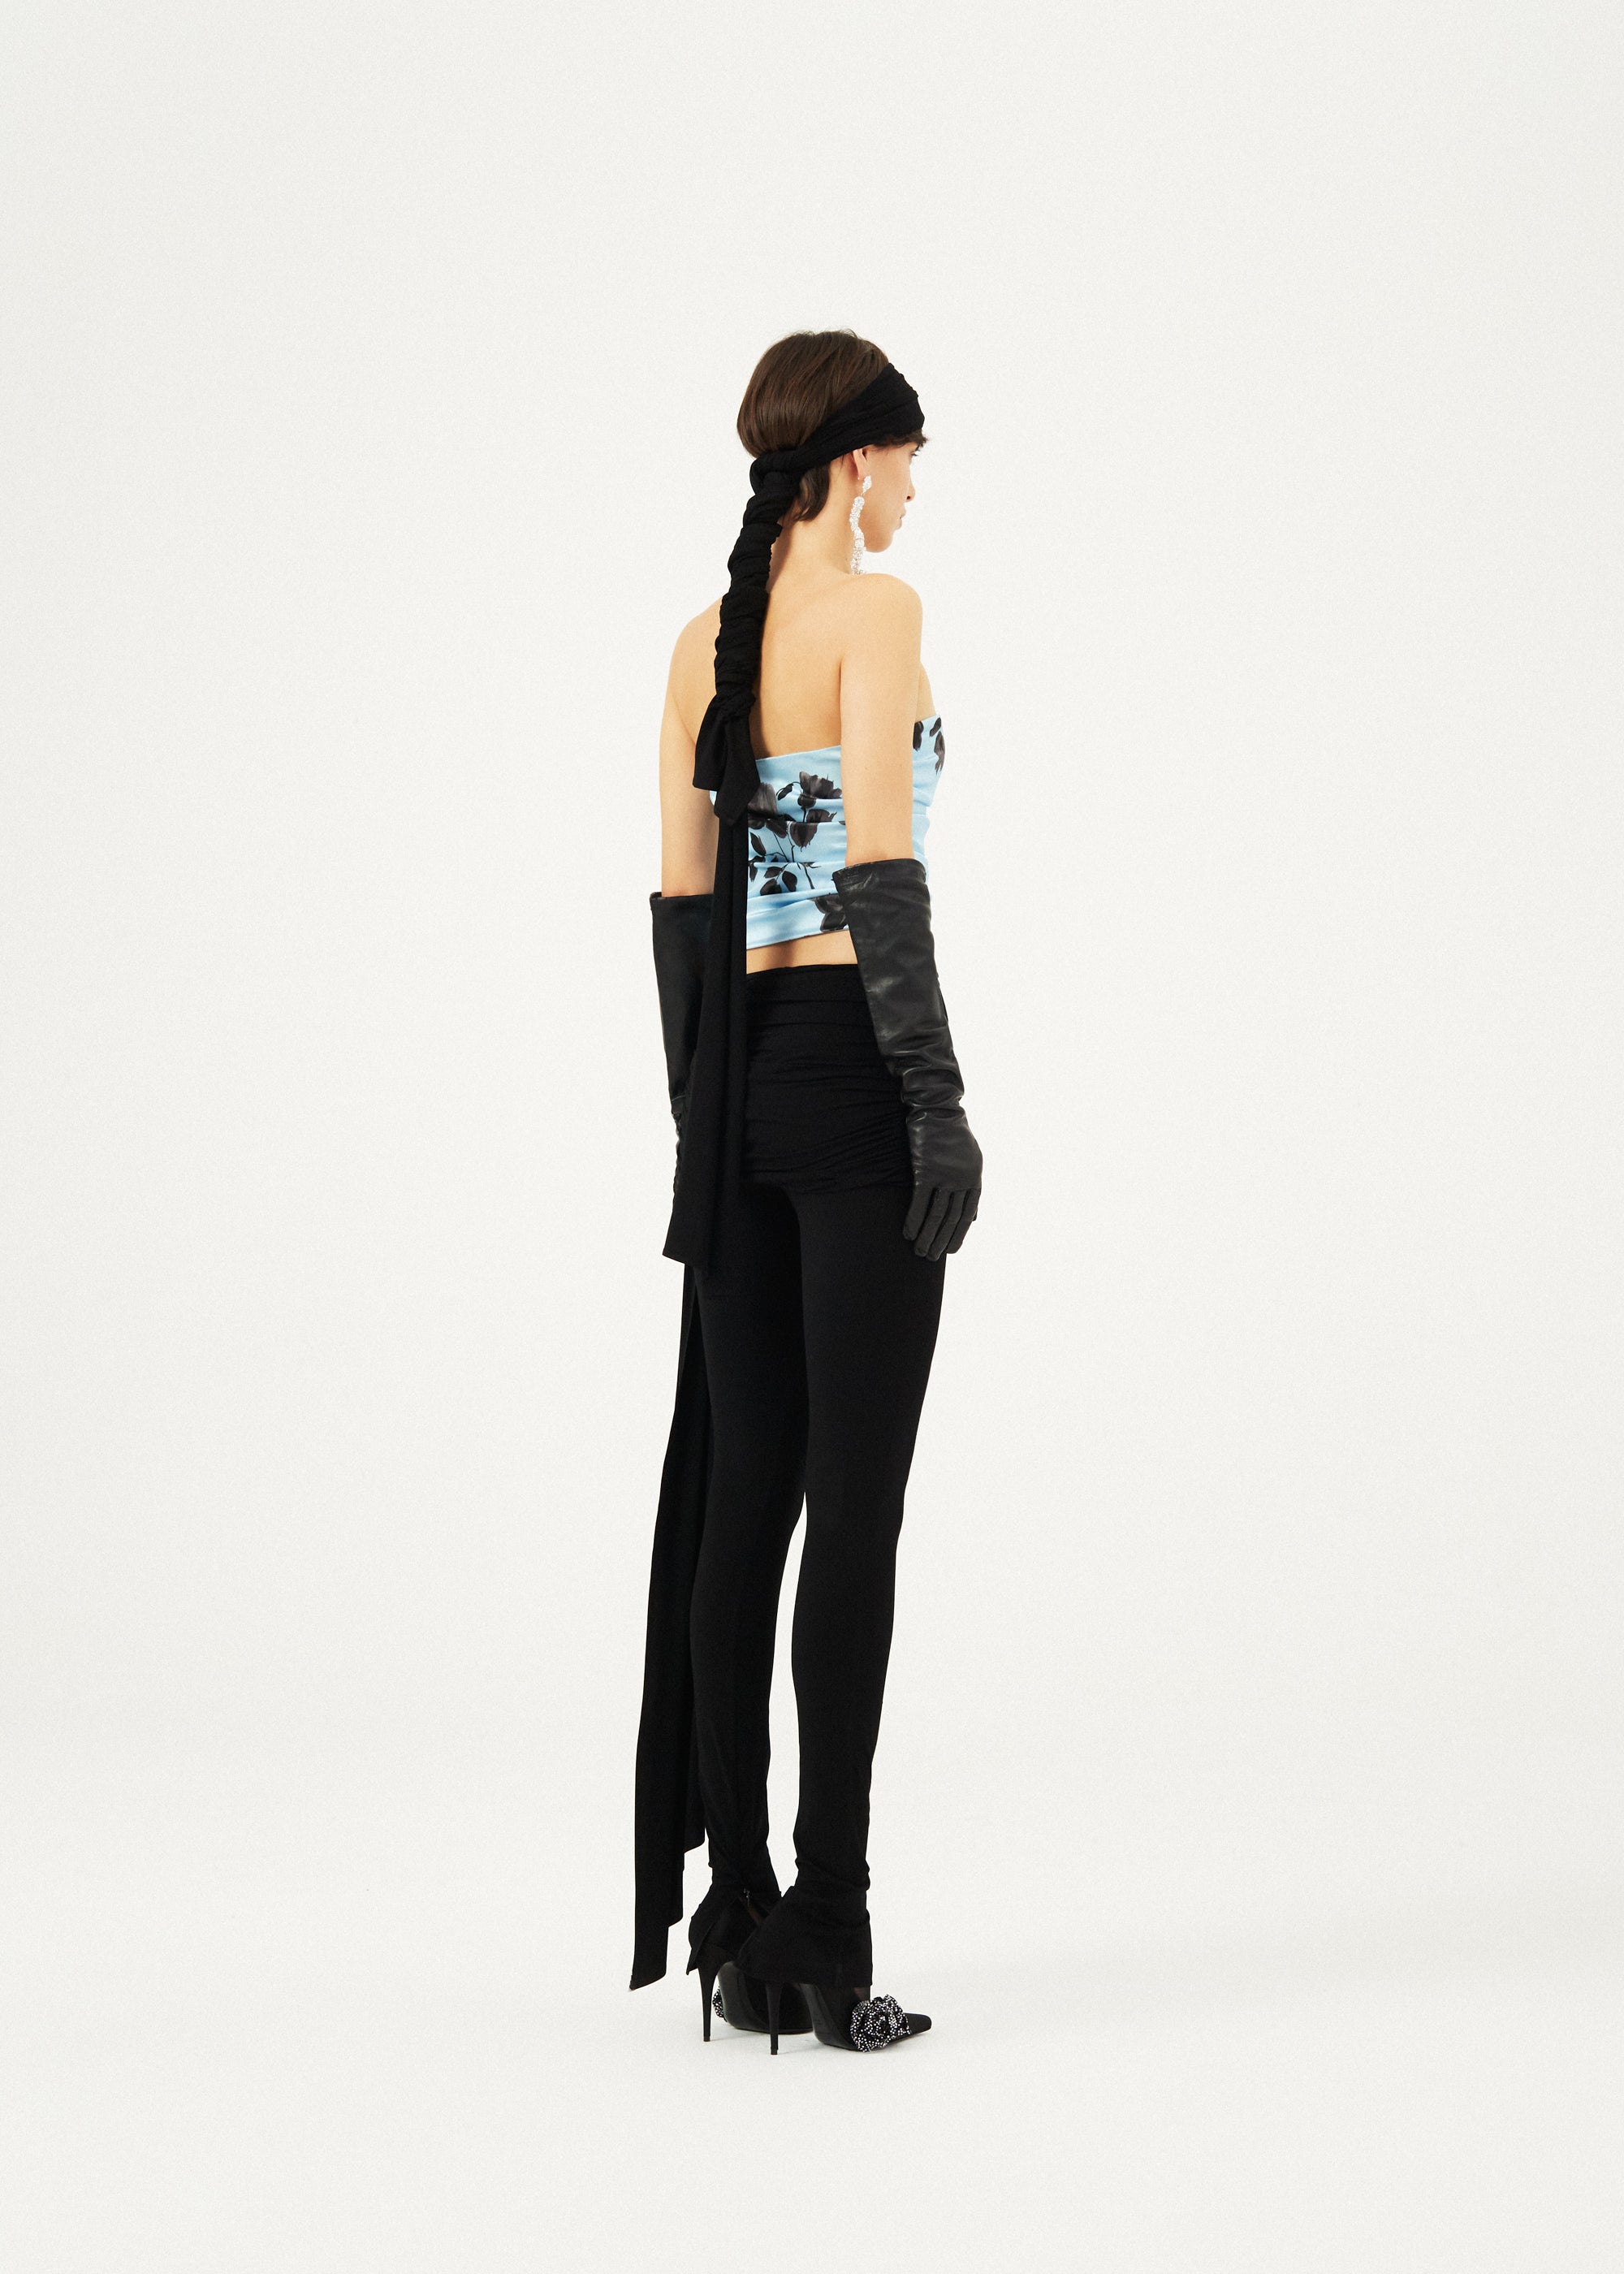 Sash detail jersey leggings in black | Magda Butrym